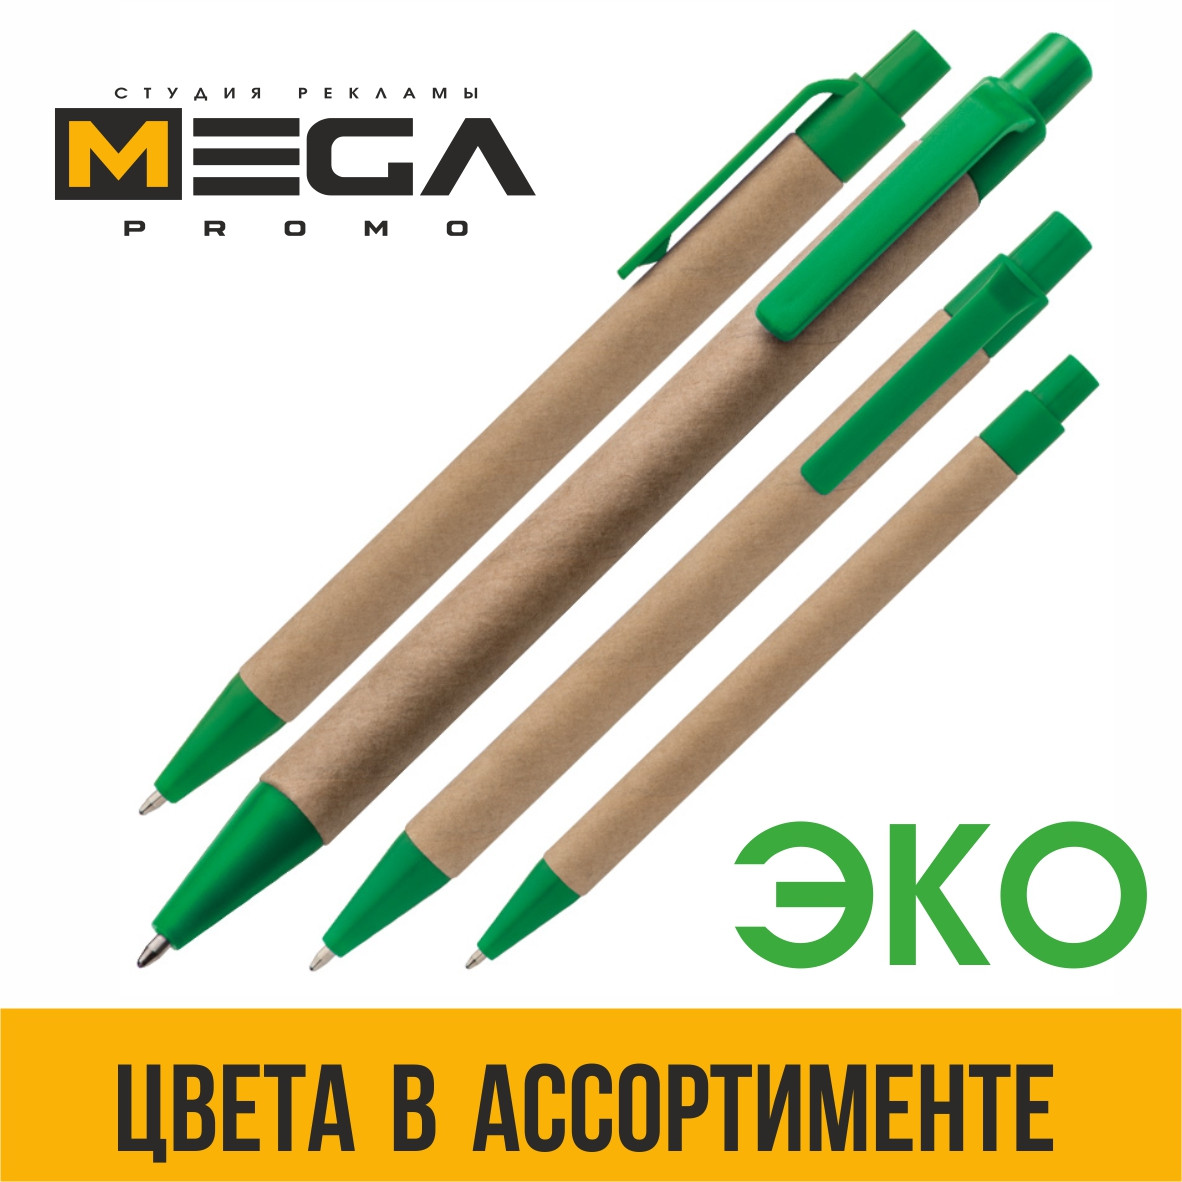 ЭКО-ручки из картона с Вашим логотипом (полноцветная УФ печать на ручках), фото 1